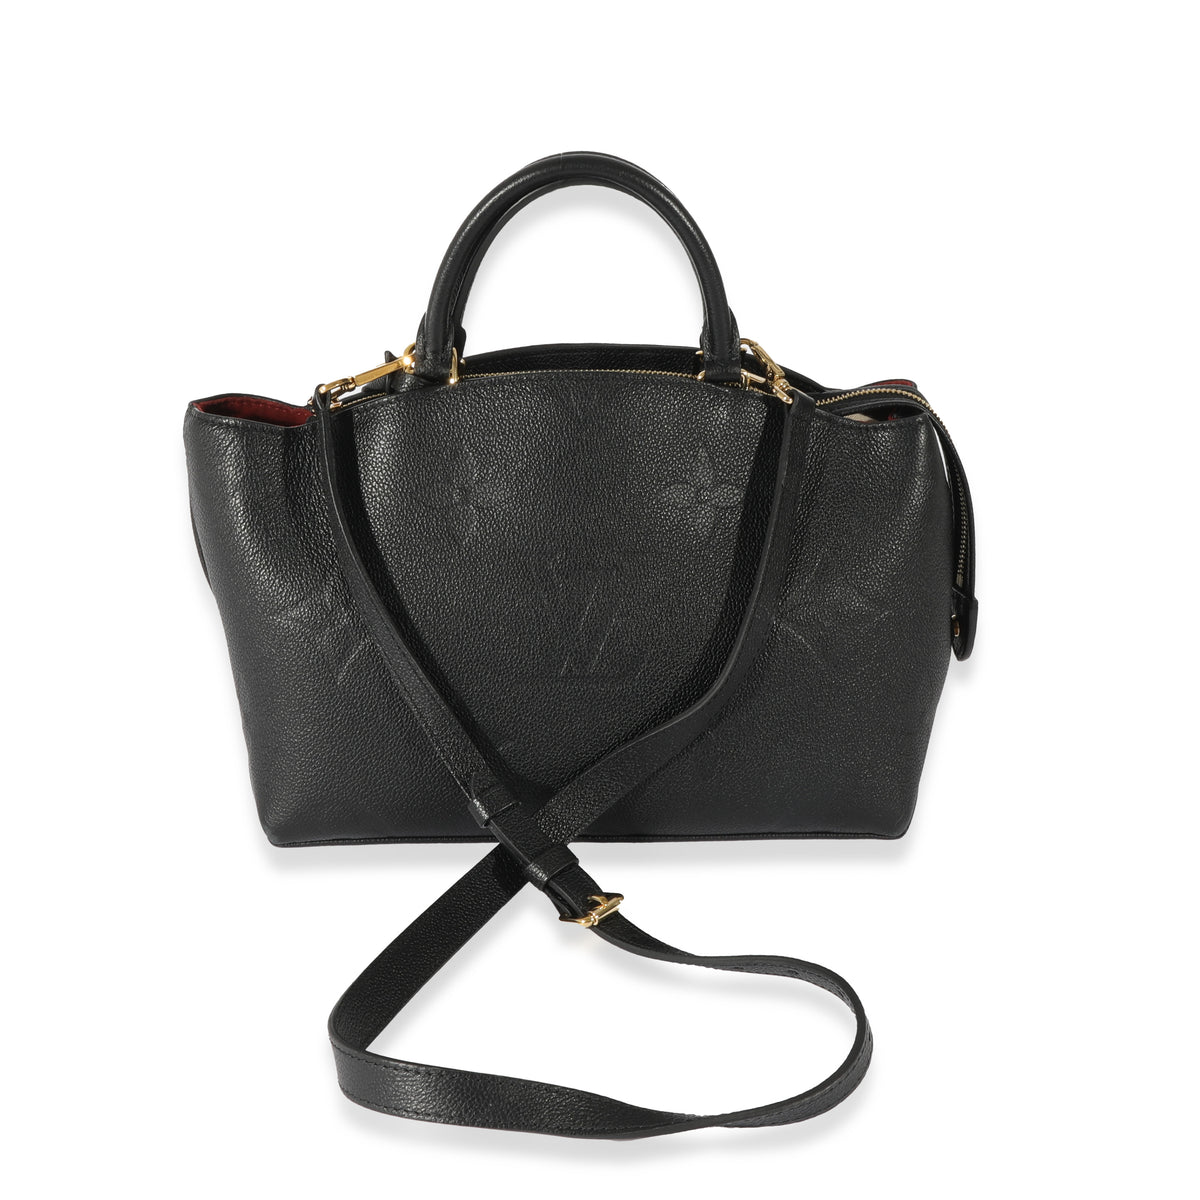 NEW Louis Vuitton Petit Palais Bicolor Monogram Empriente Leather Bag Black